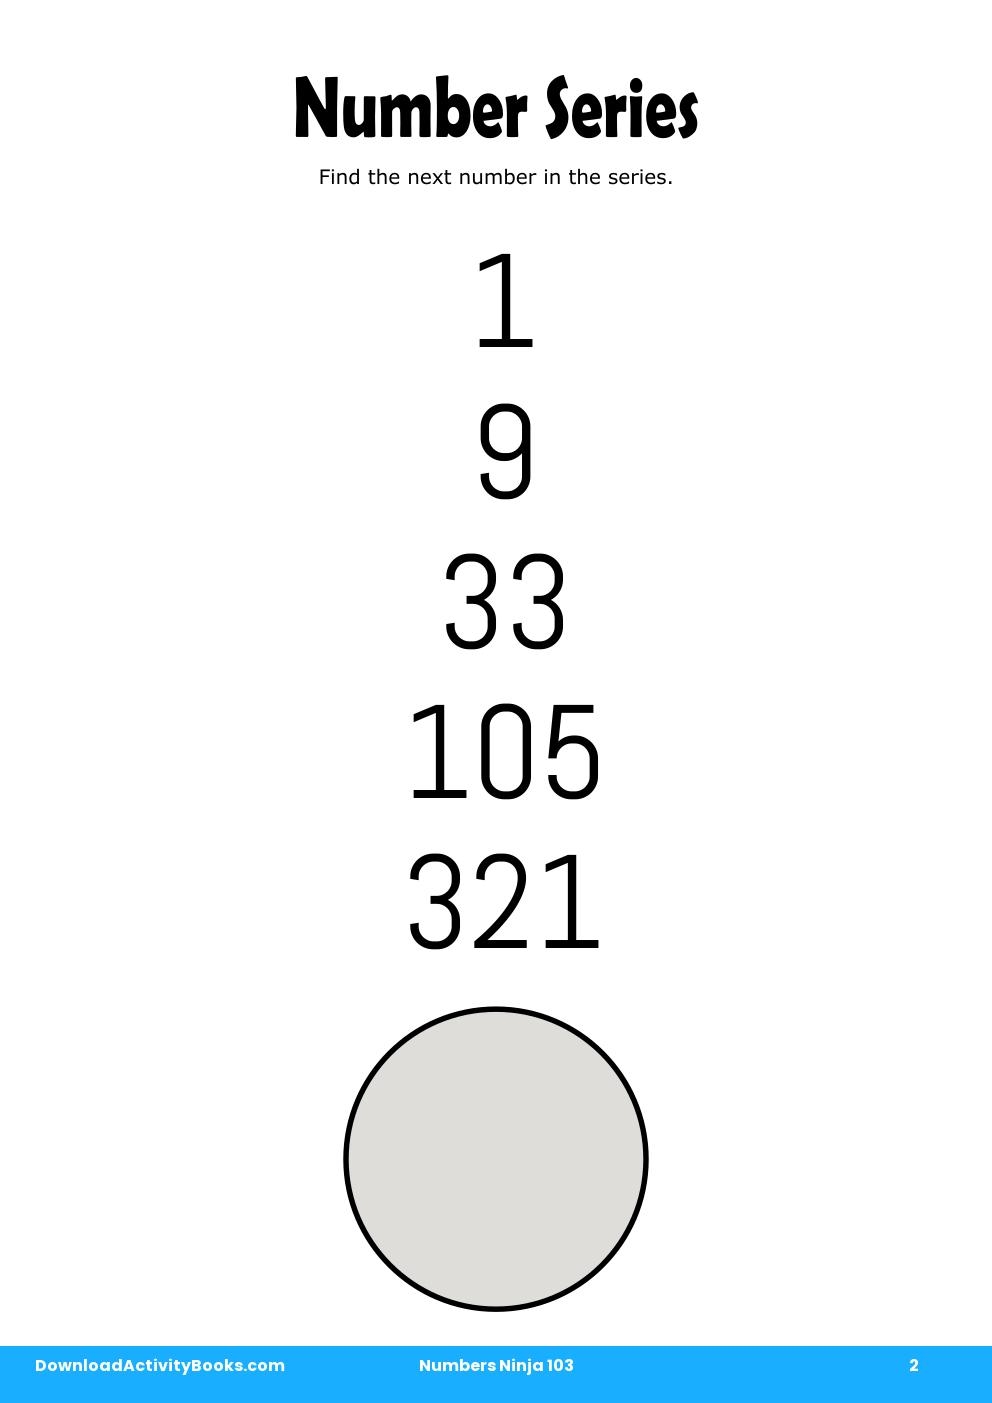 Number Series in Numbers Ninja 103